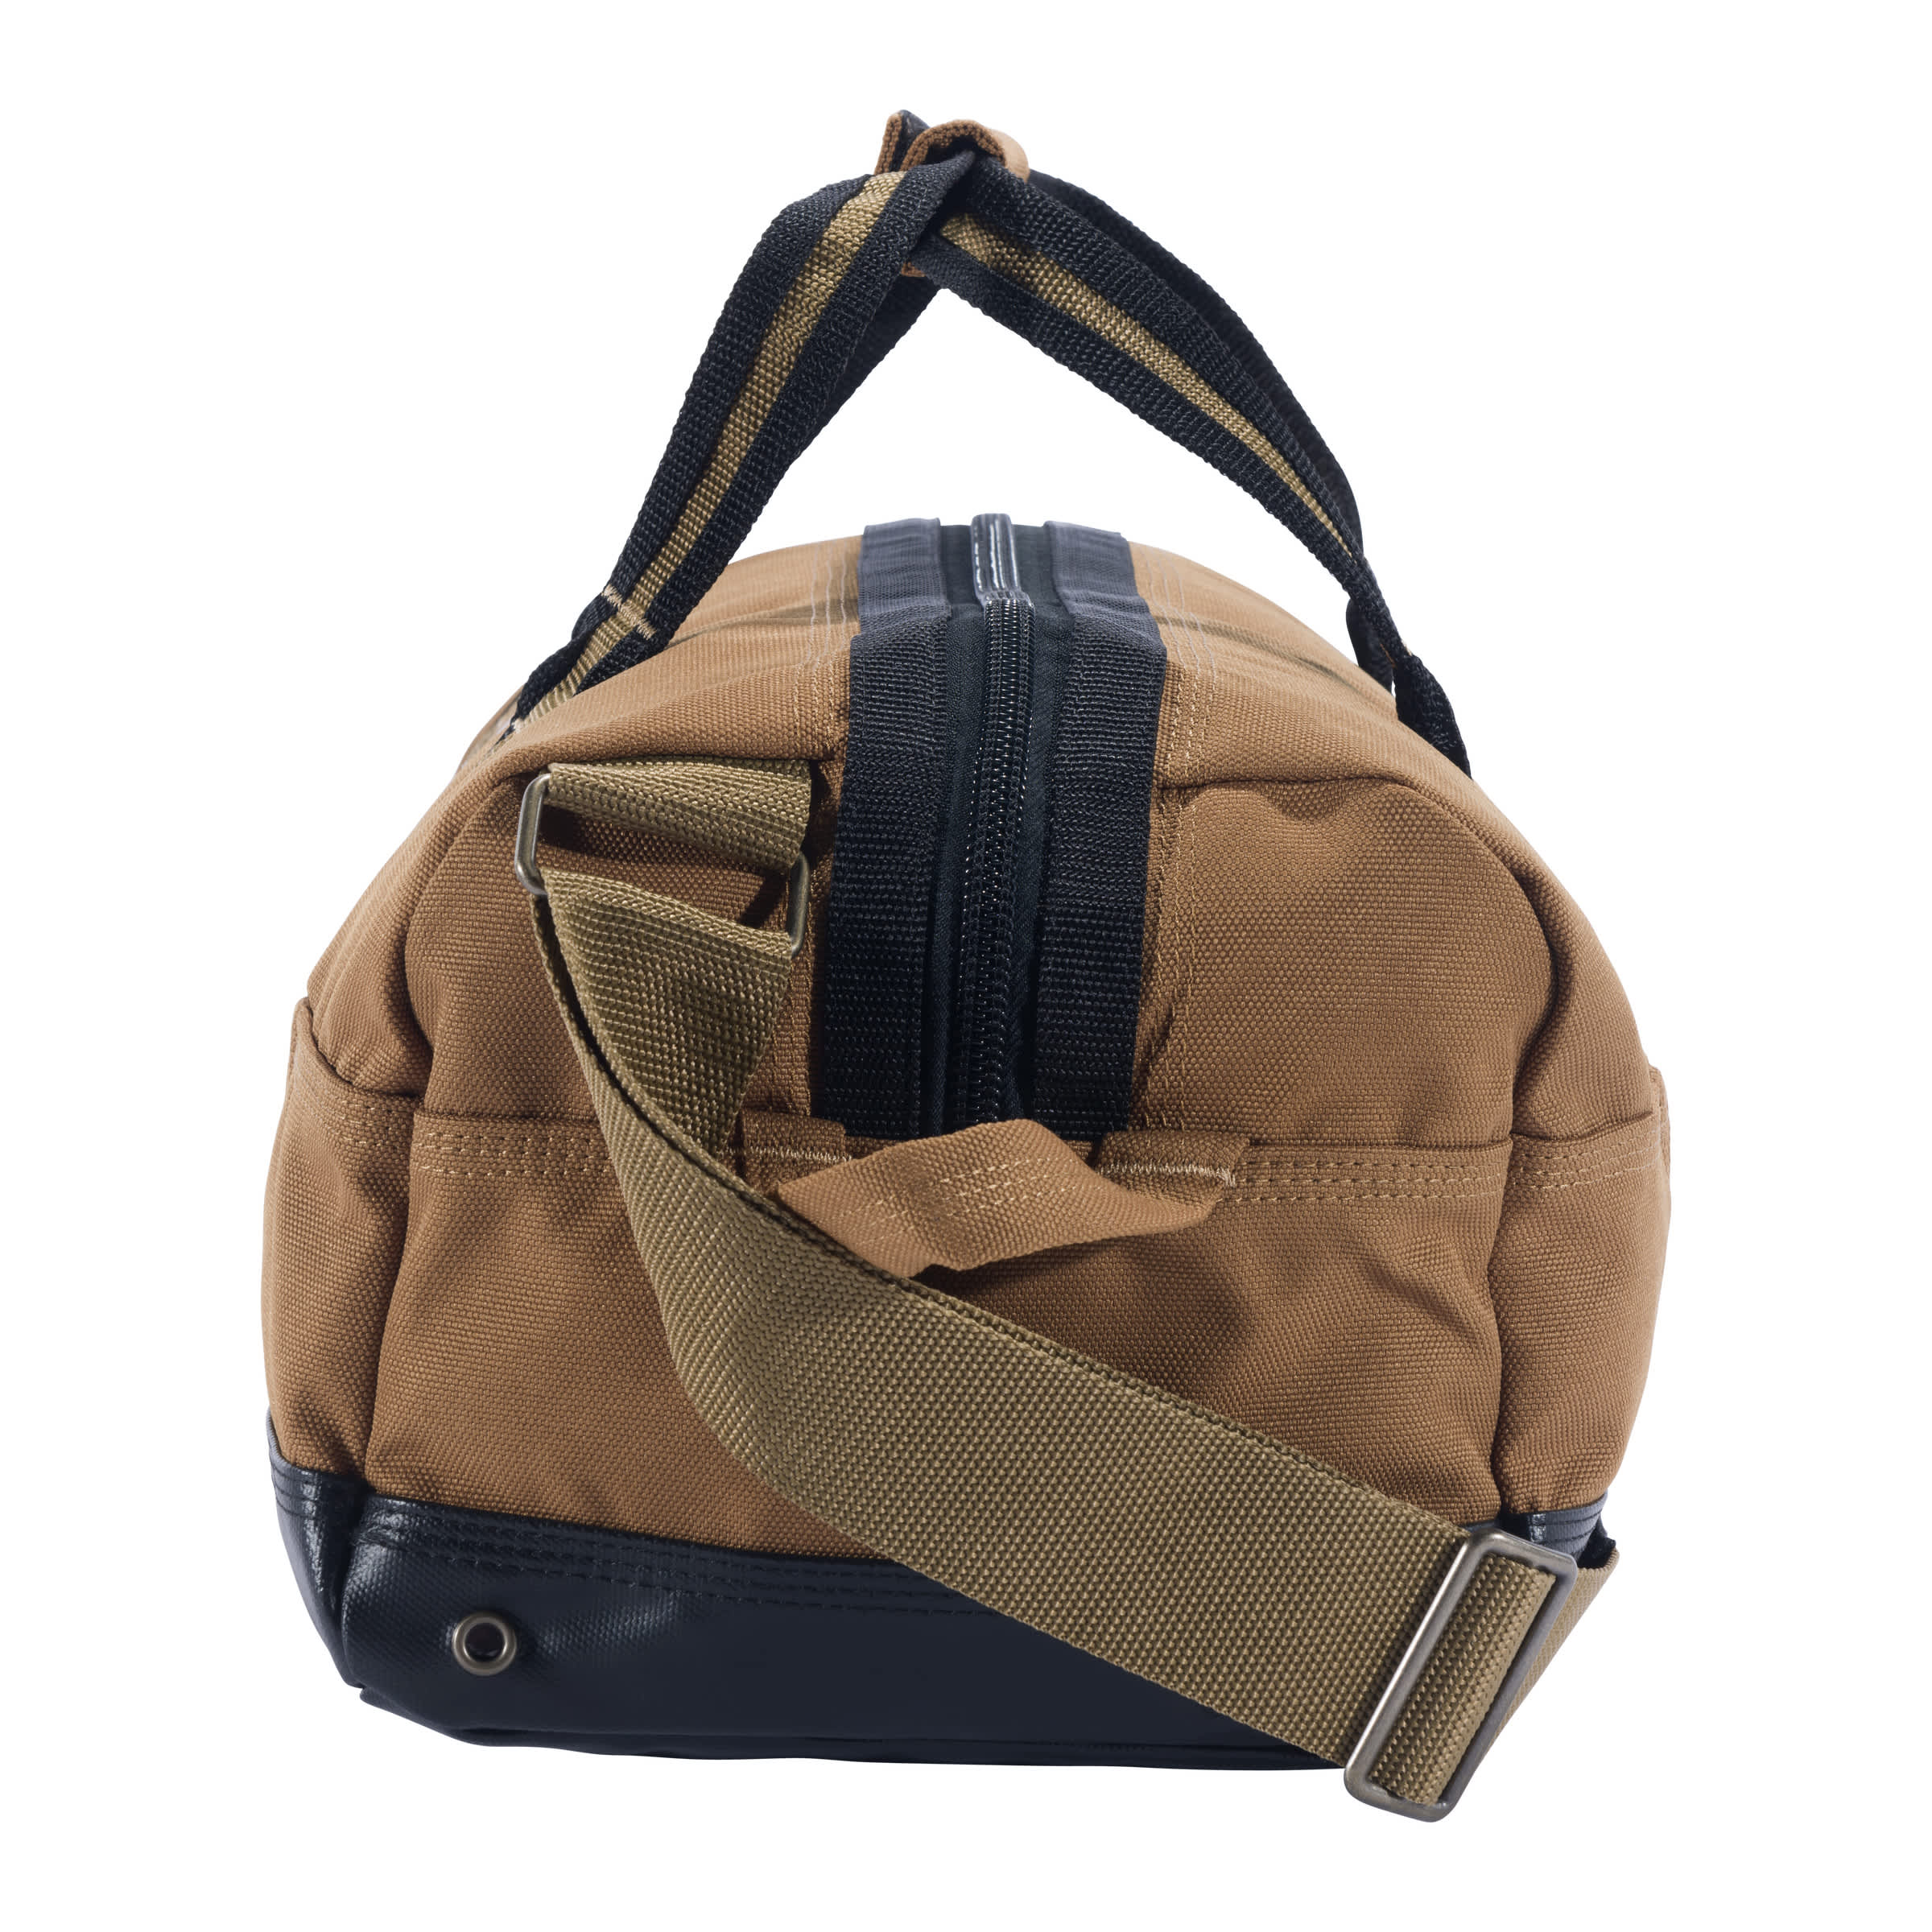 Carhartt® Classic Duffel Bag - 35 Litre - Carhartt Brown